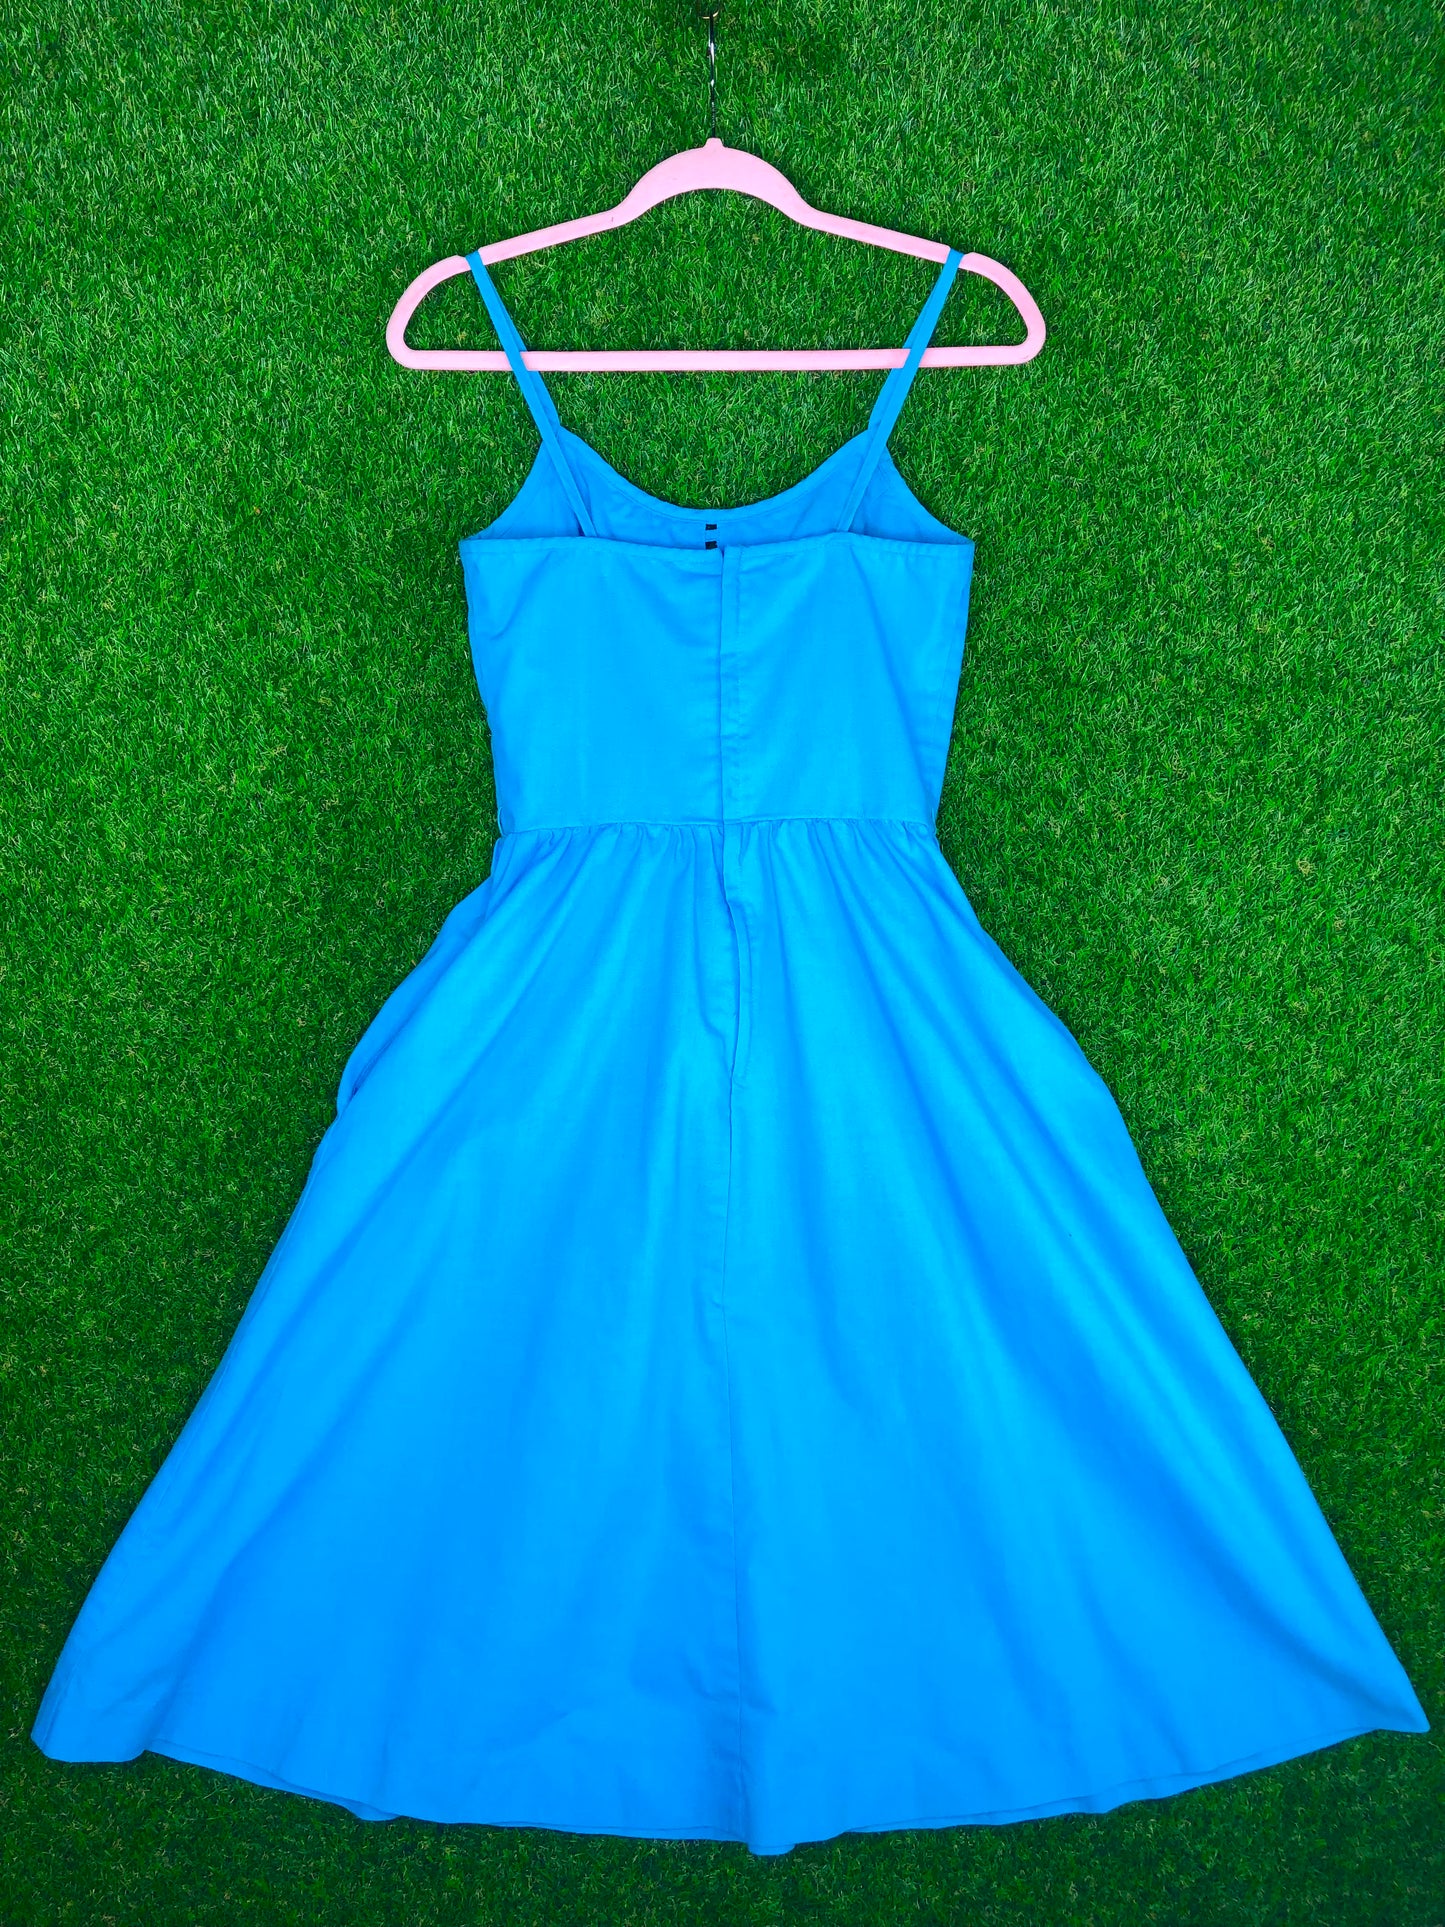 1980's Lanz Brand Teal Blue Cotton Dress